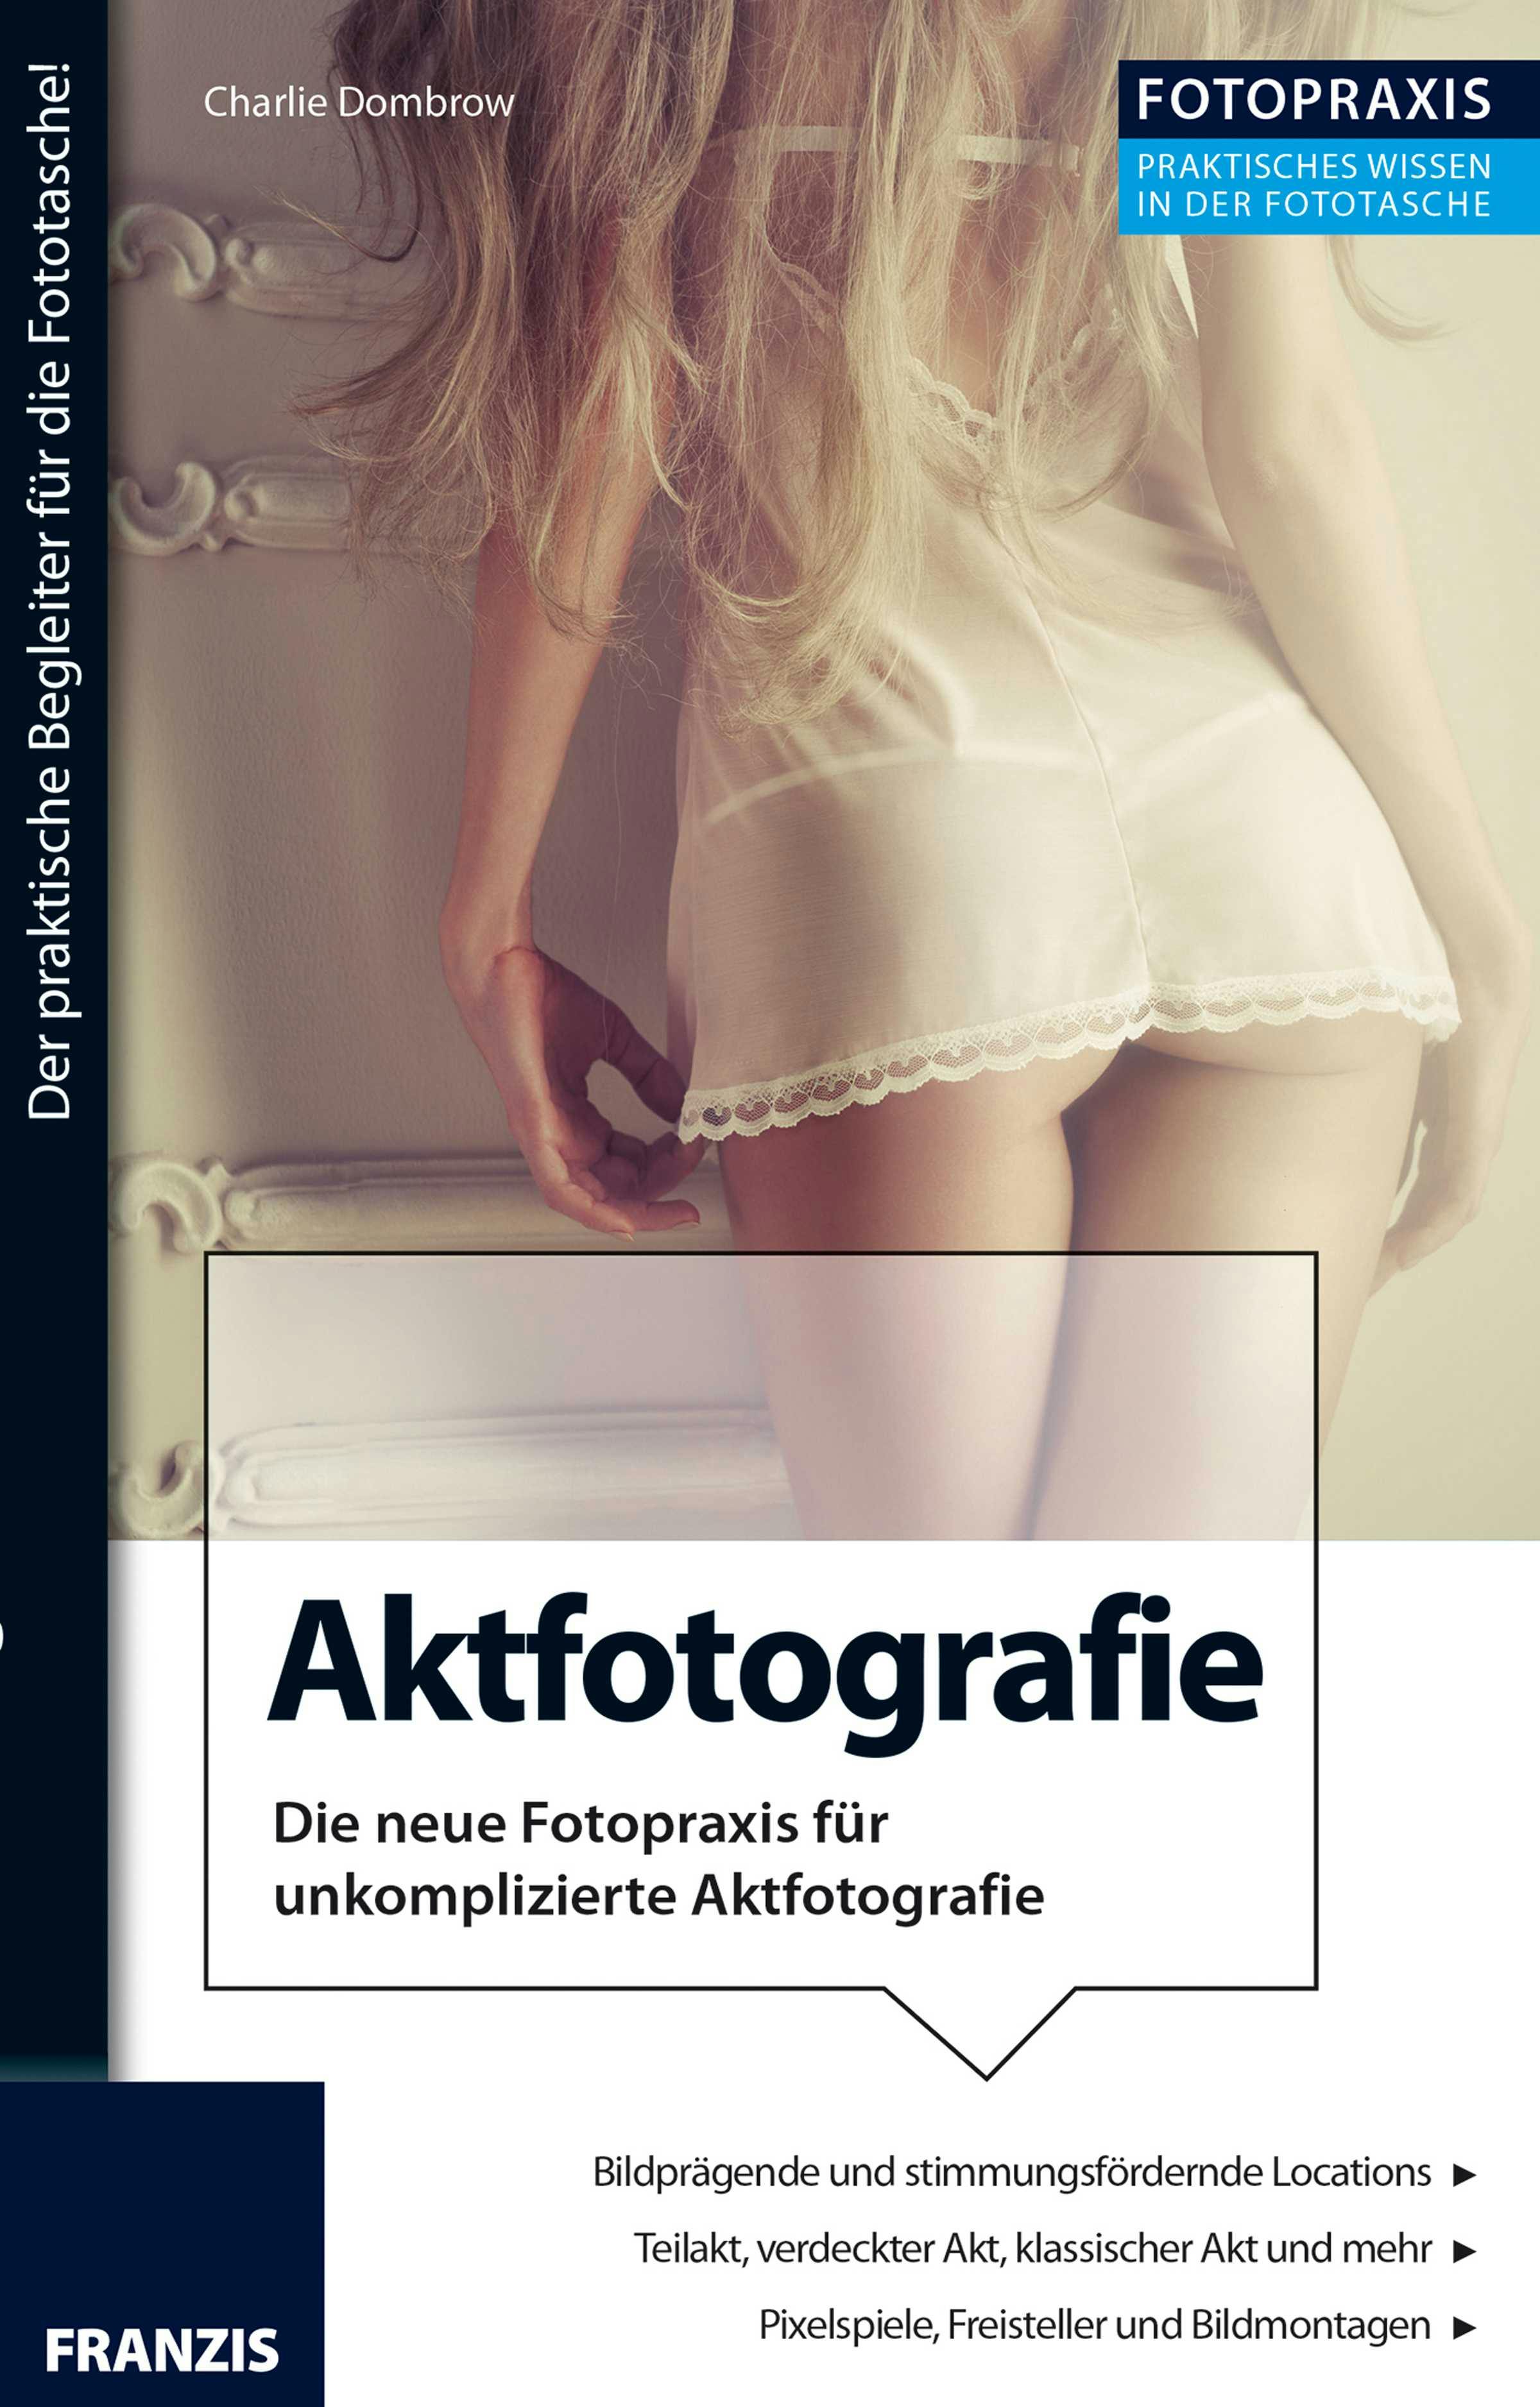 Foto Praxis Aktfotografie: Die neue Fotopraxis für unkomplizierte Aktfotografie! - undefined